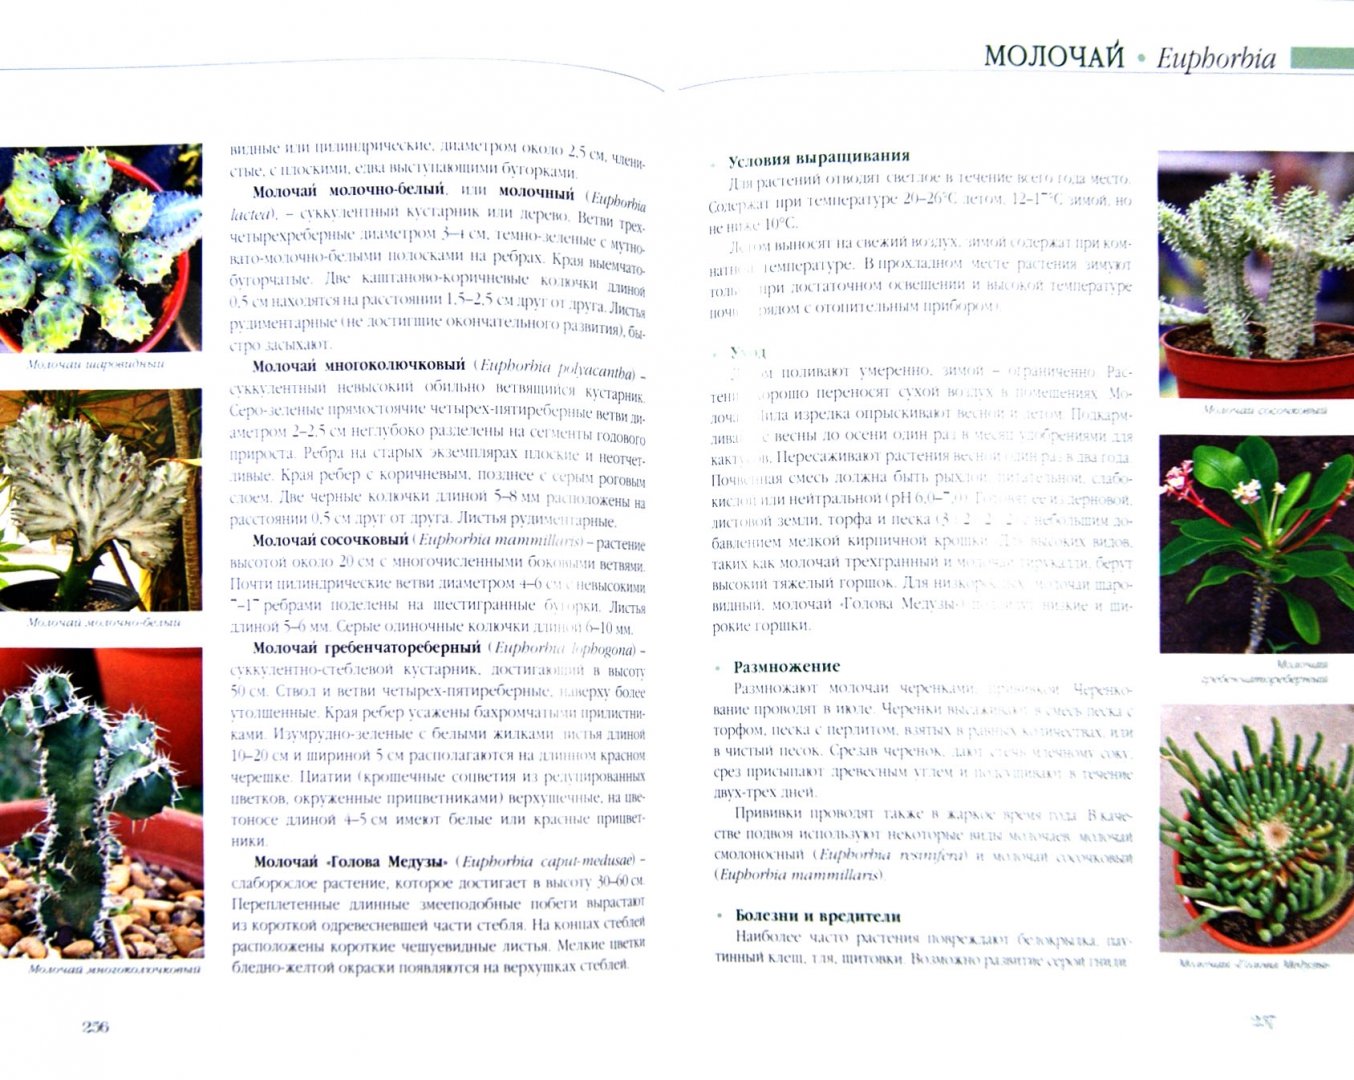 Иллюстрация 1 из 13 для Комнатные растения - Князева, Князева | Лабиринт - книги. Источник: Лабиринт